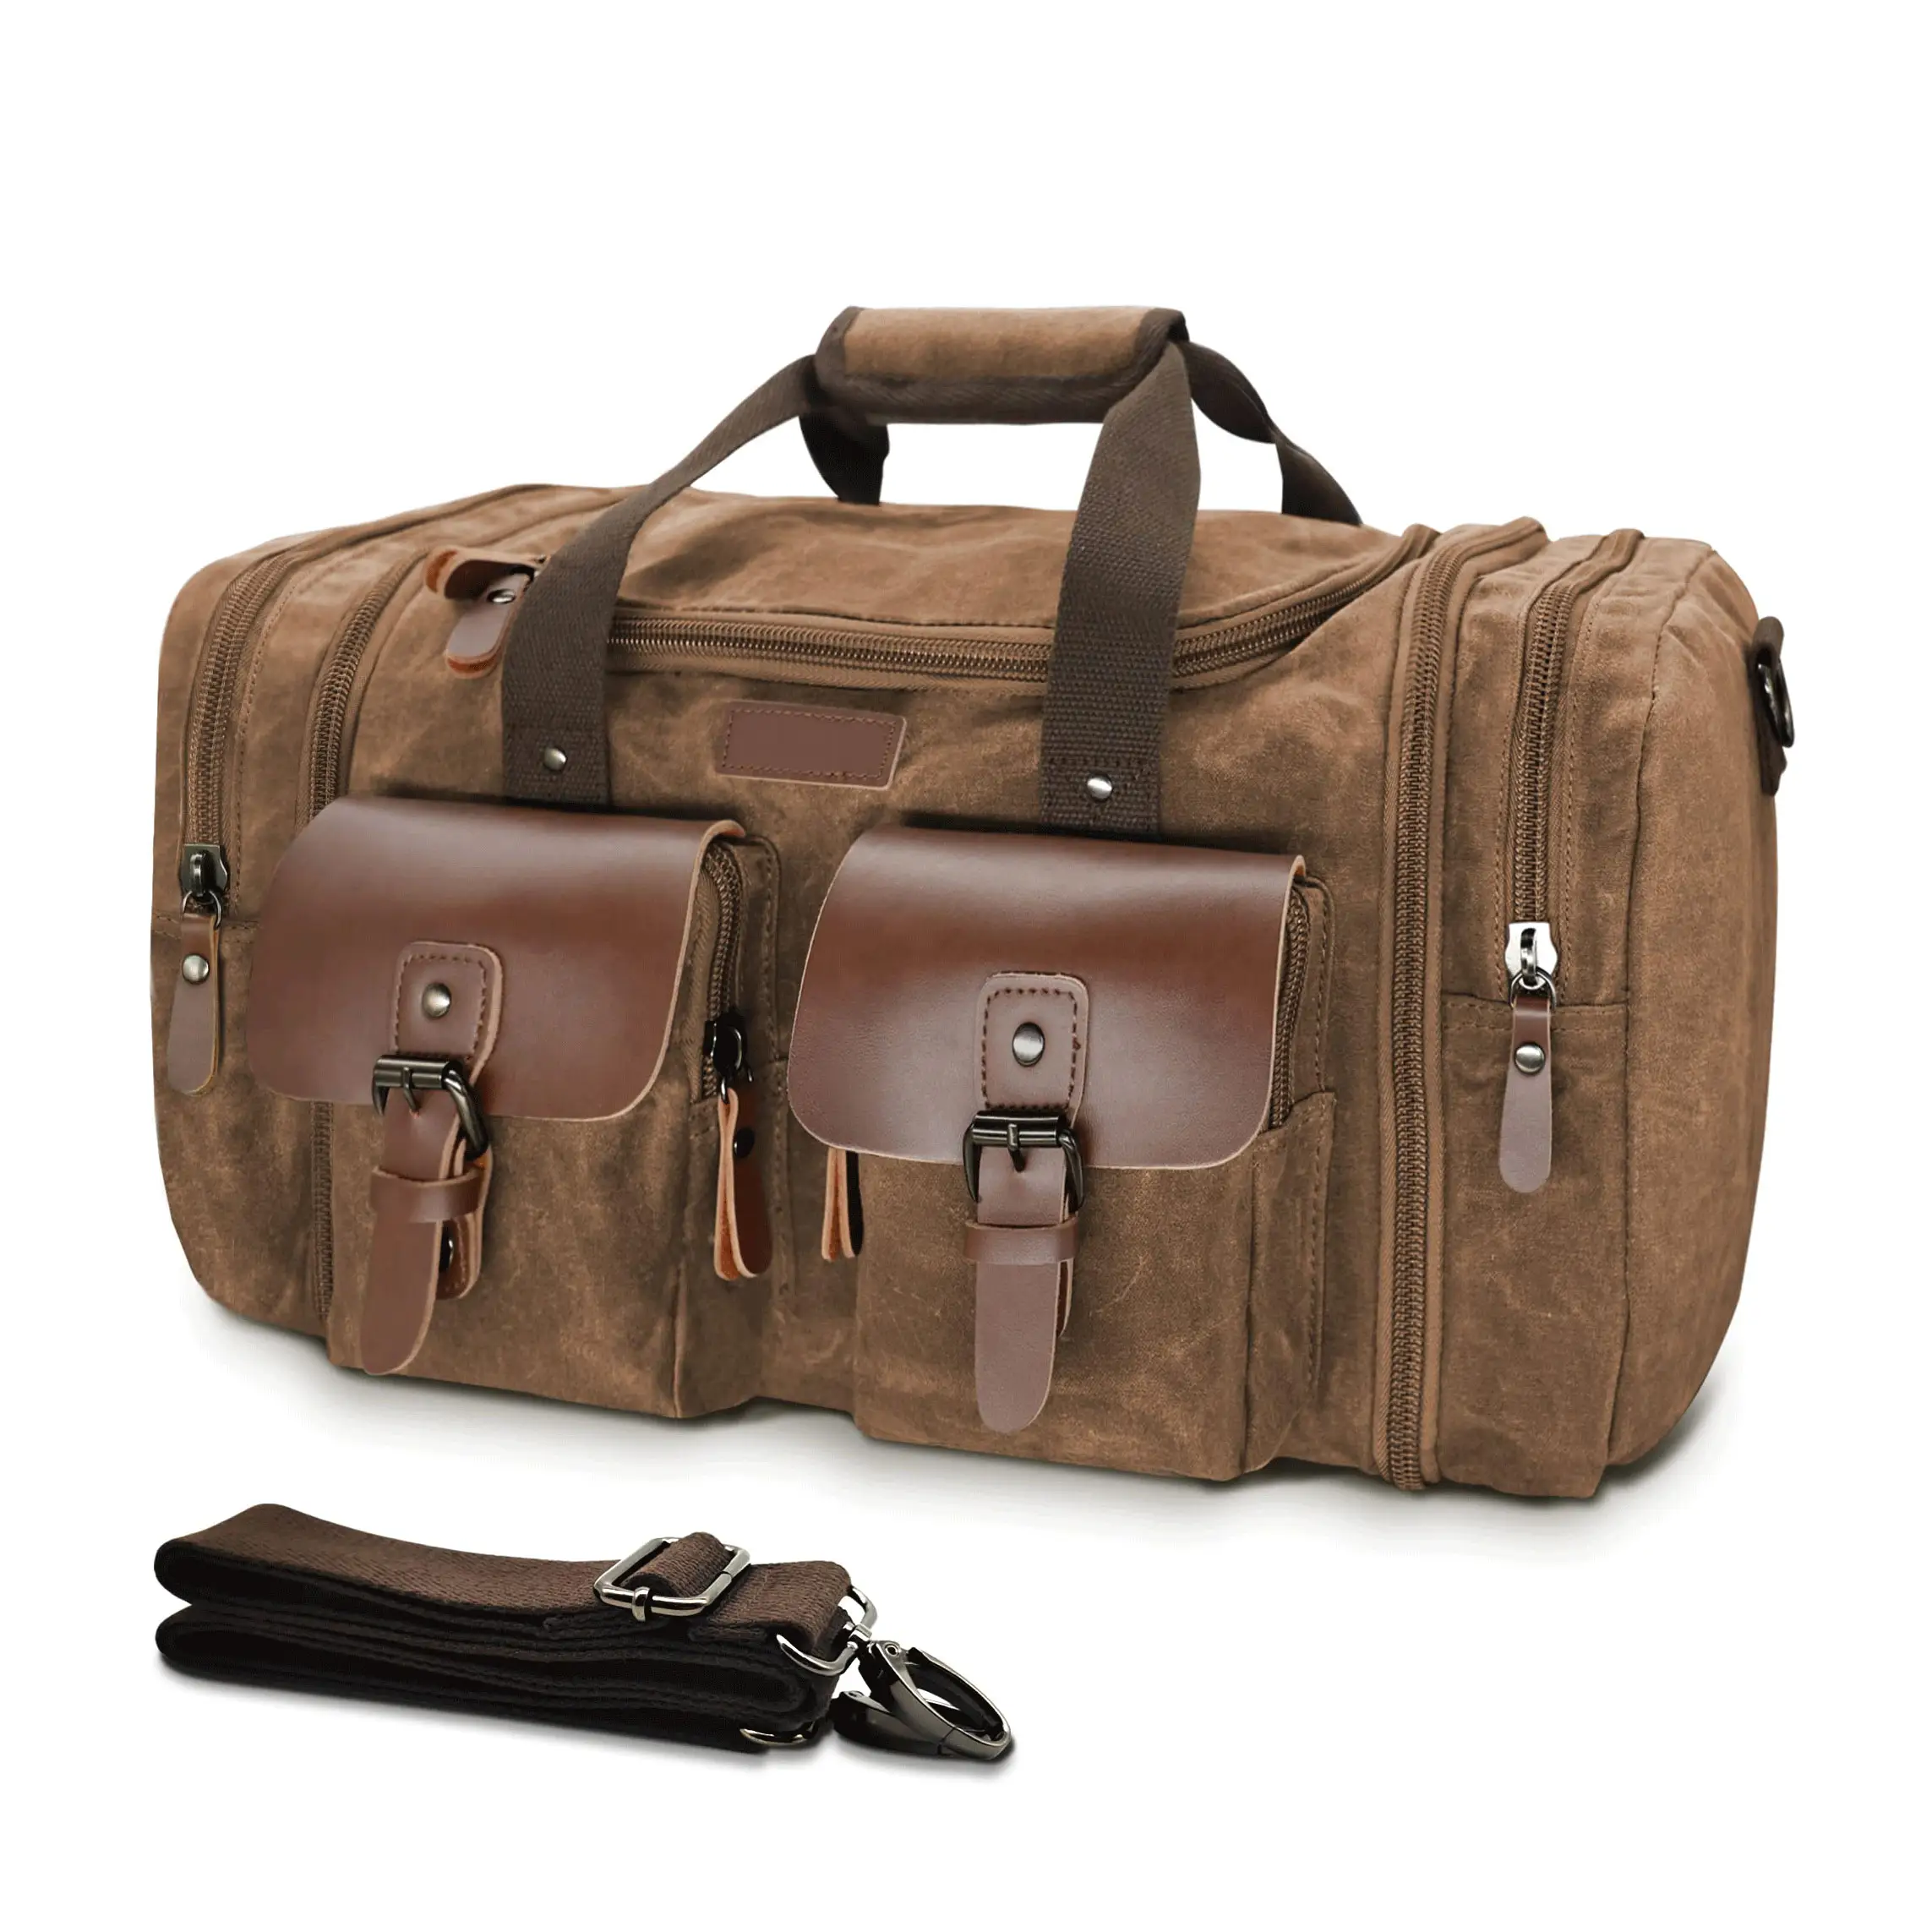 गर्म बिक्री यात्रा डफ़ल बैग विस्तार योग्य कैनवास वास्तविक चमड़े के डफ़ल बैग को रात भर में अपग्रेड किया गया